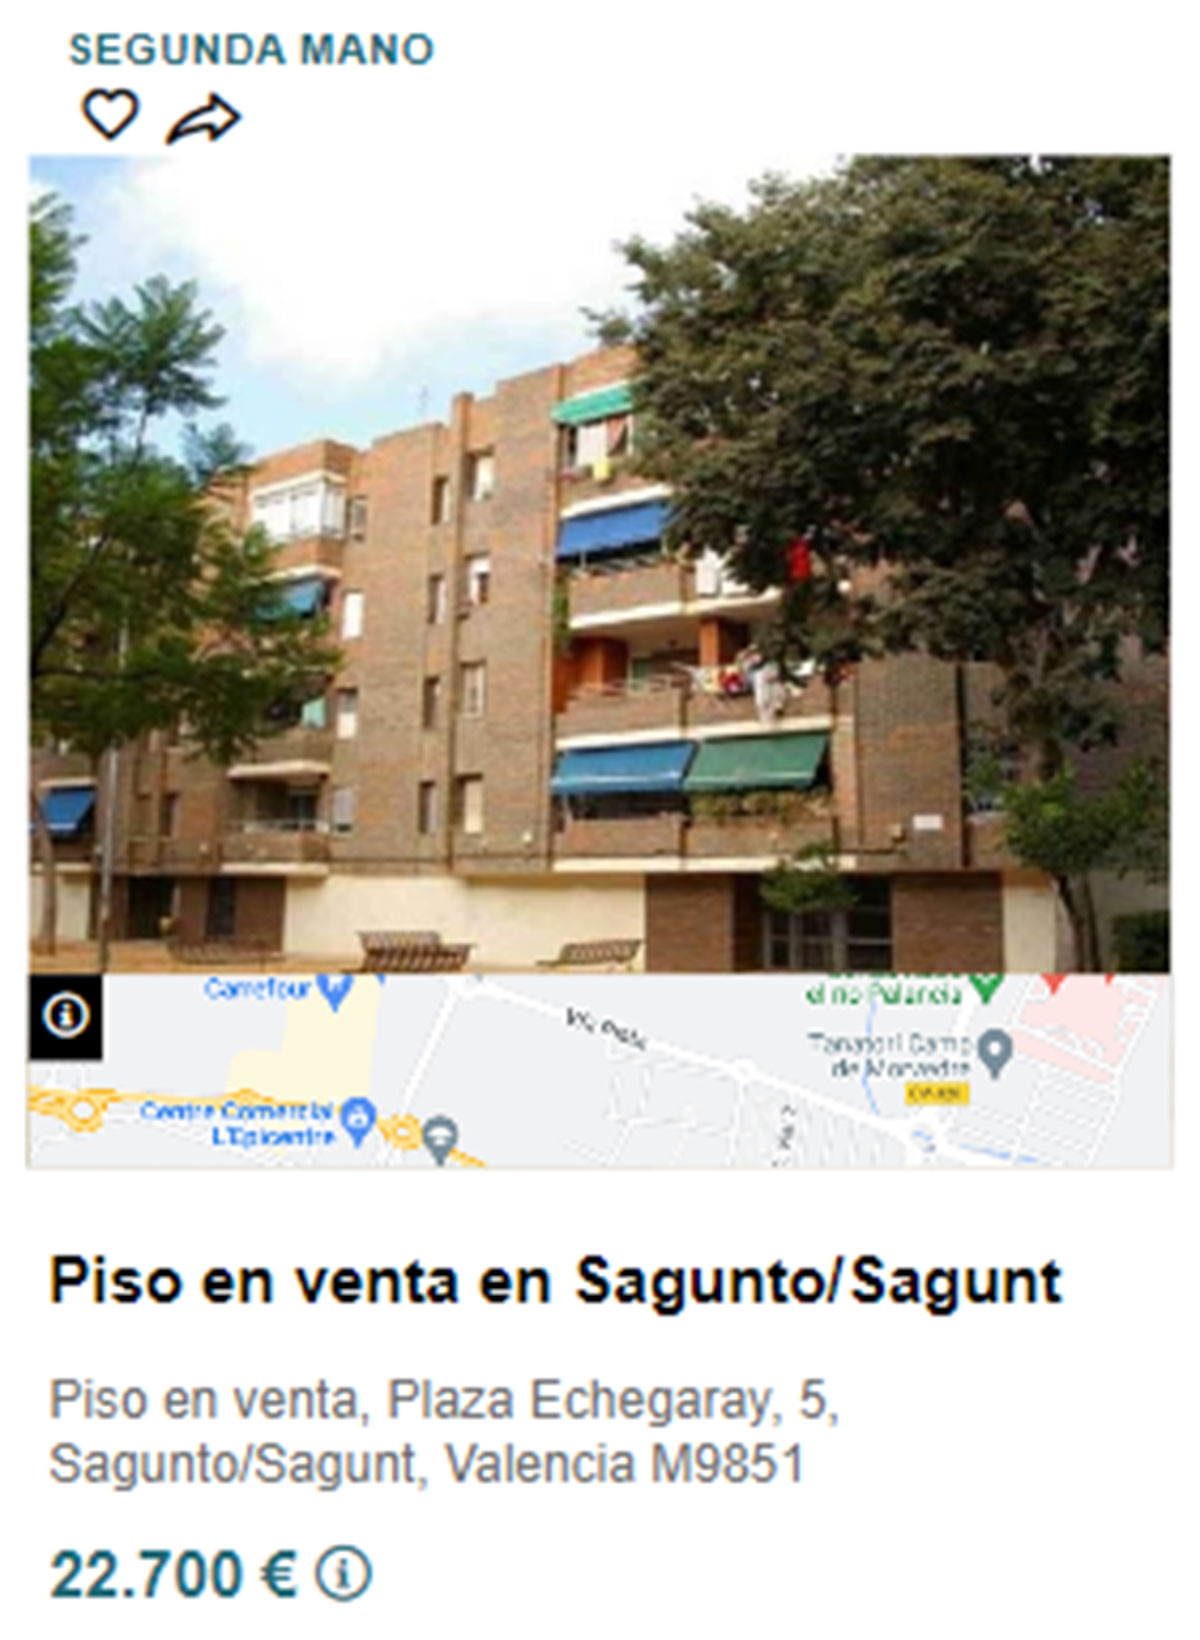 Piso en pueblos de Valencia por 22.700 euros